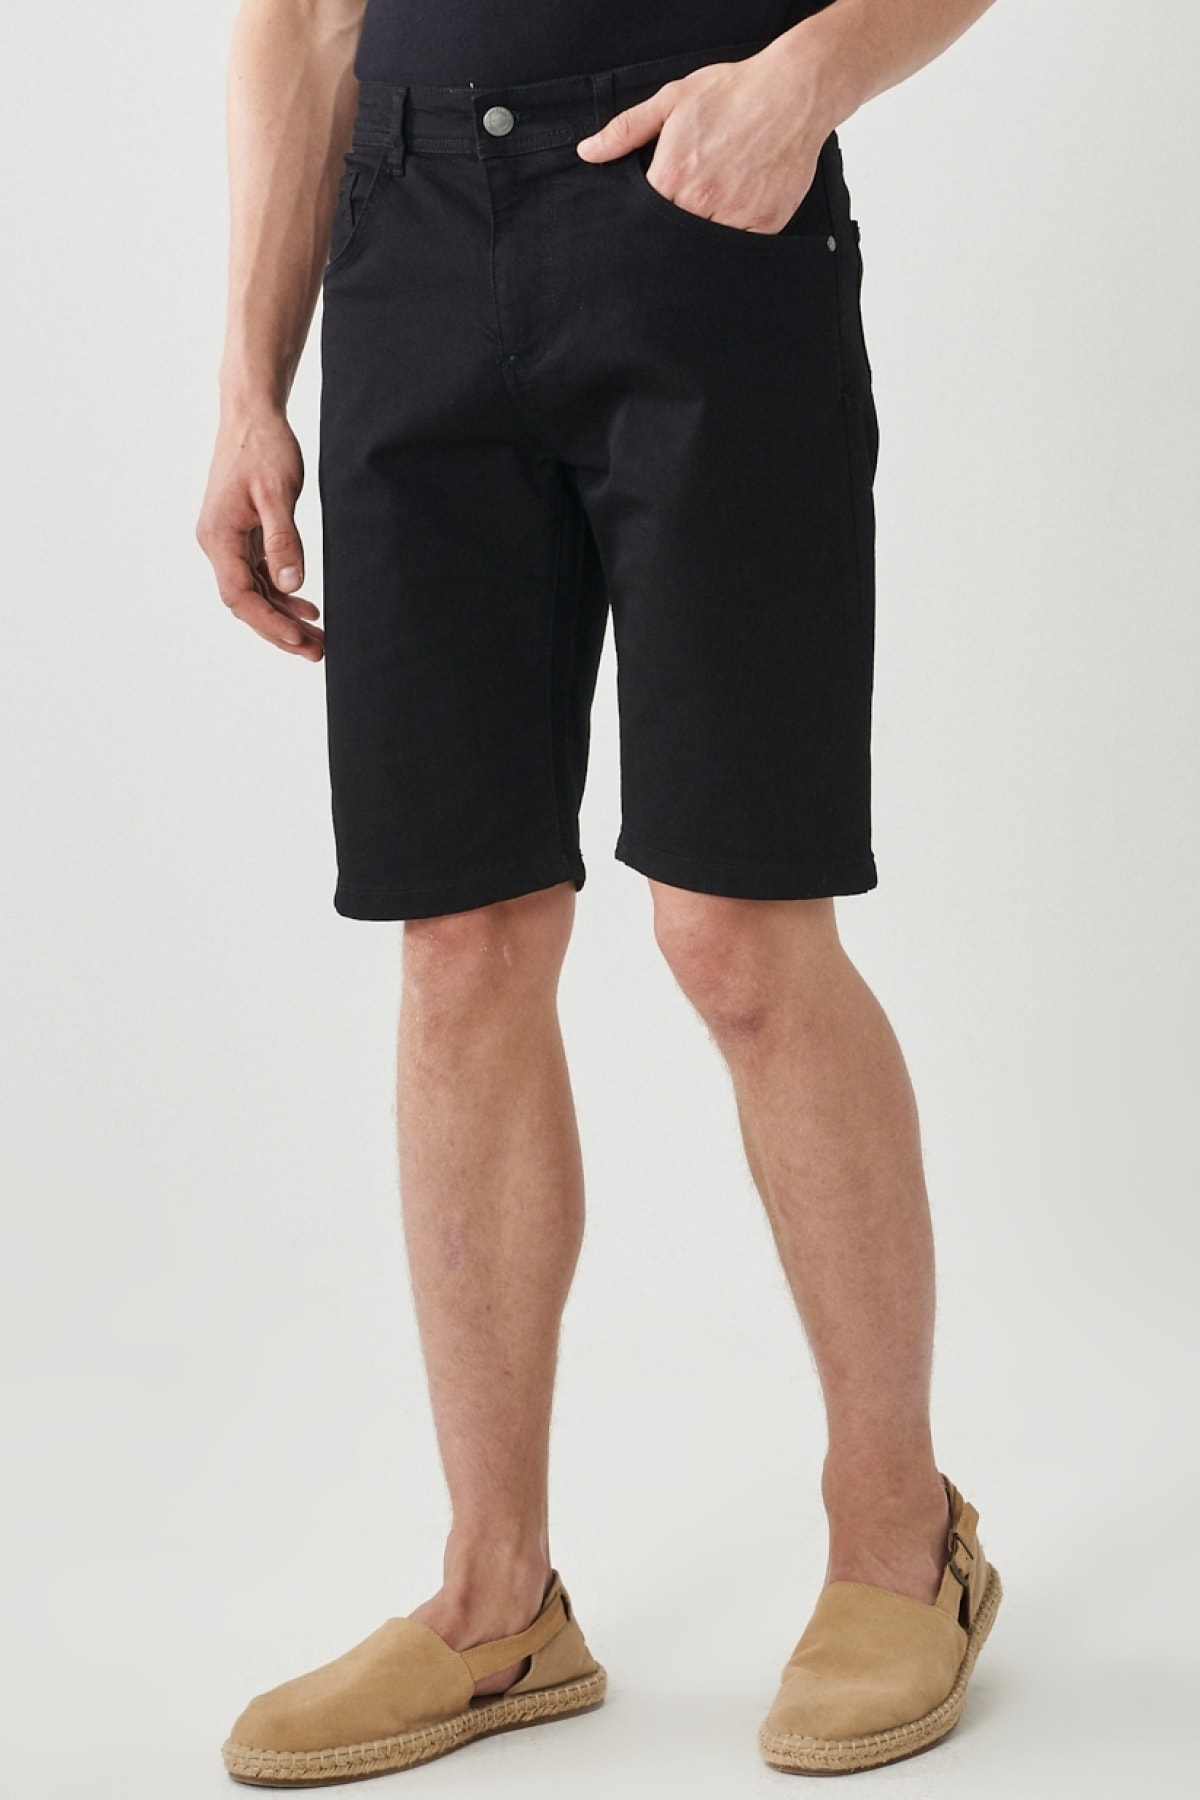 Levně AC&Co / Altınyıldız Classics Men's Black Comfort Fit Relaxed Fit 5-Pocket Flexible Denim Jeans Shorts